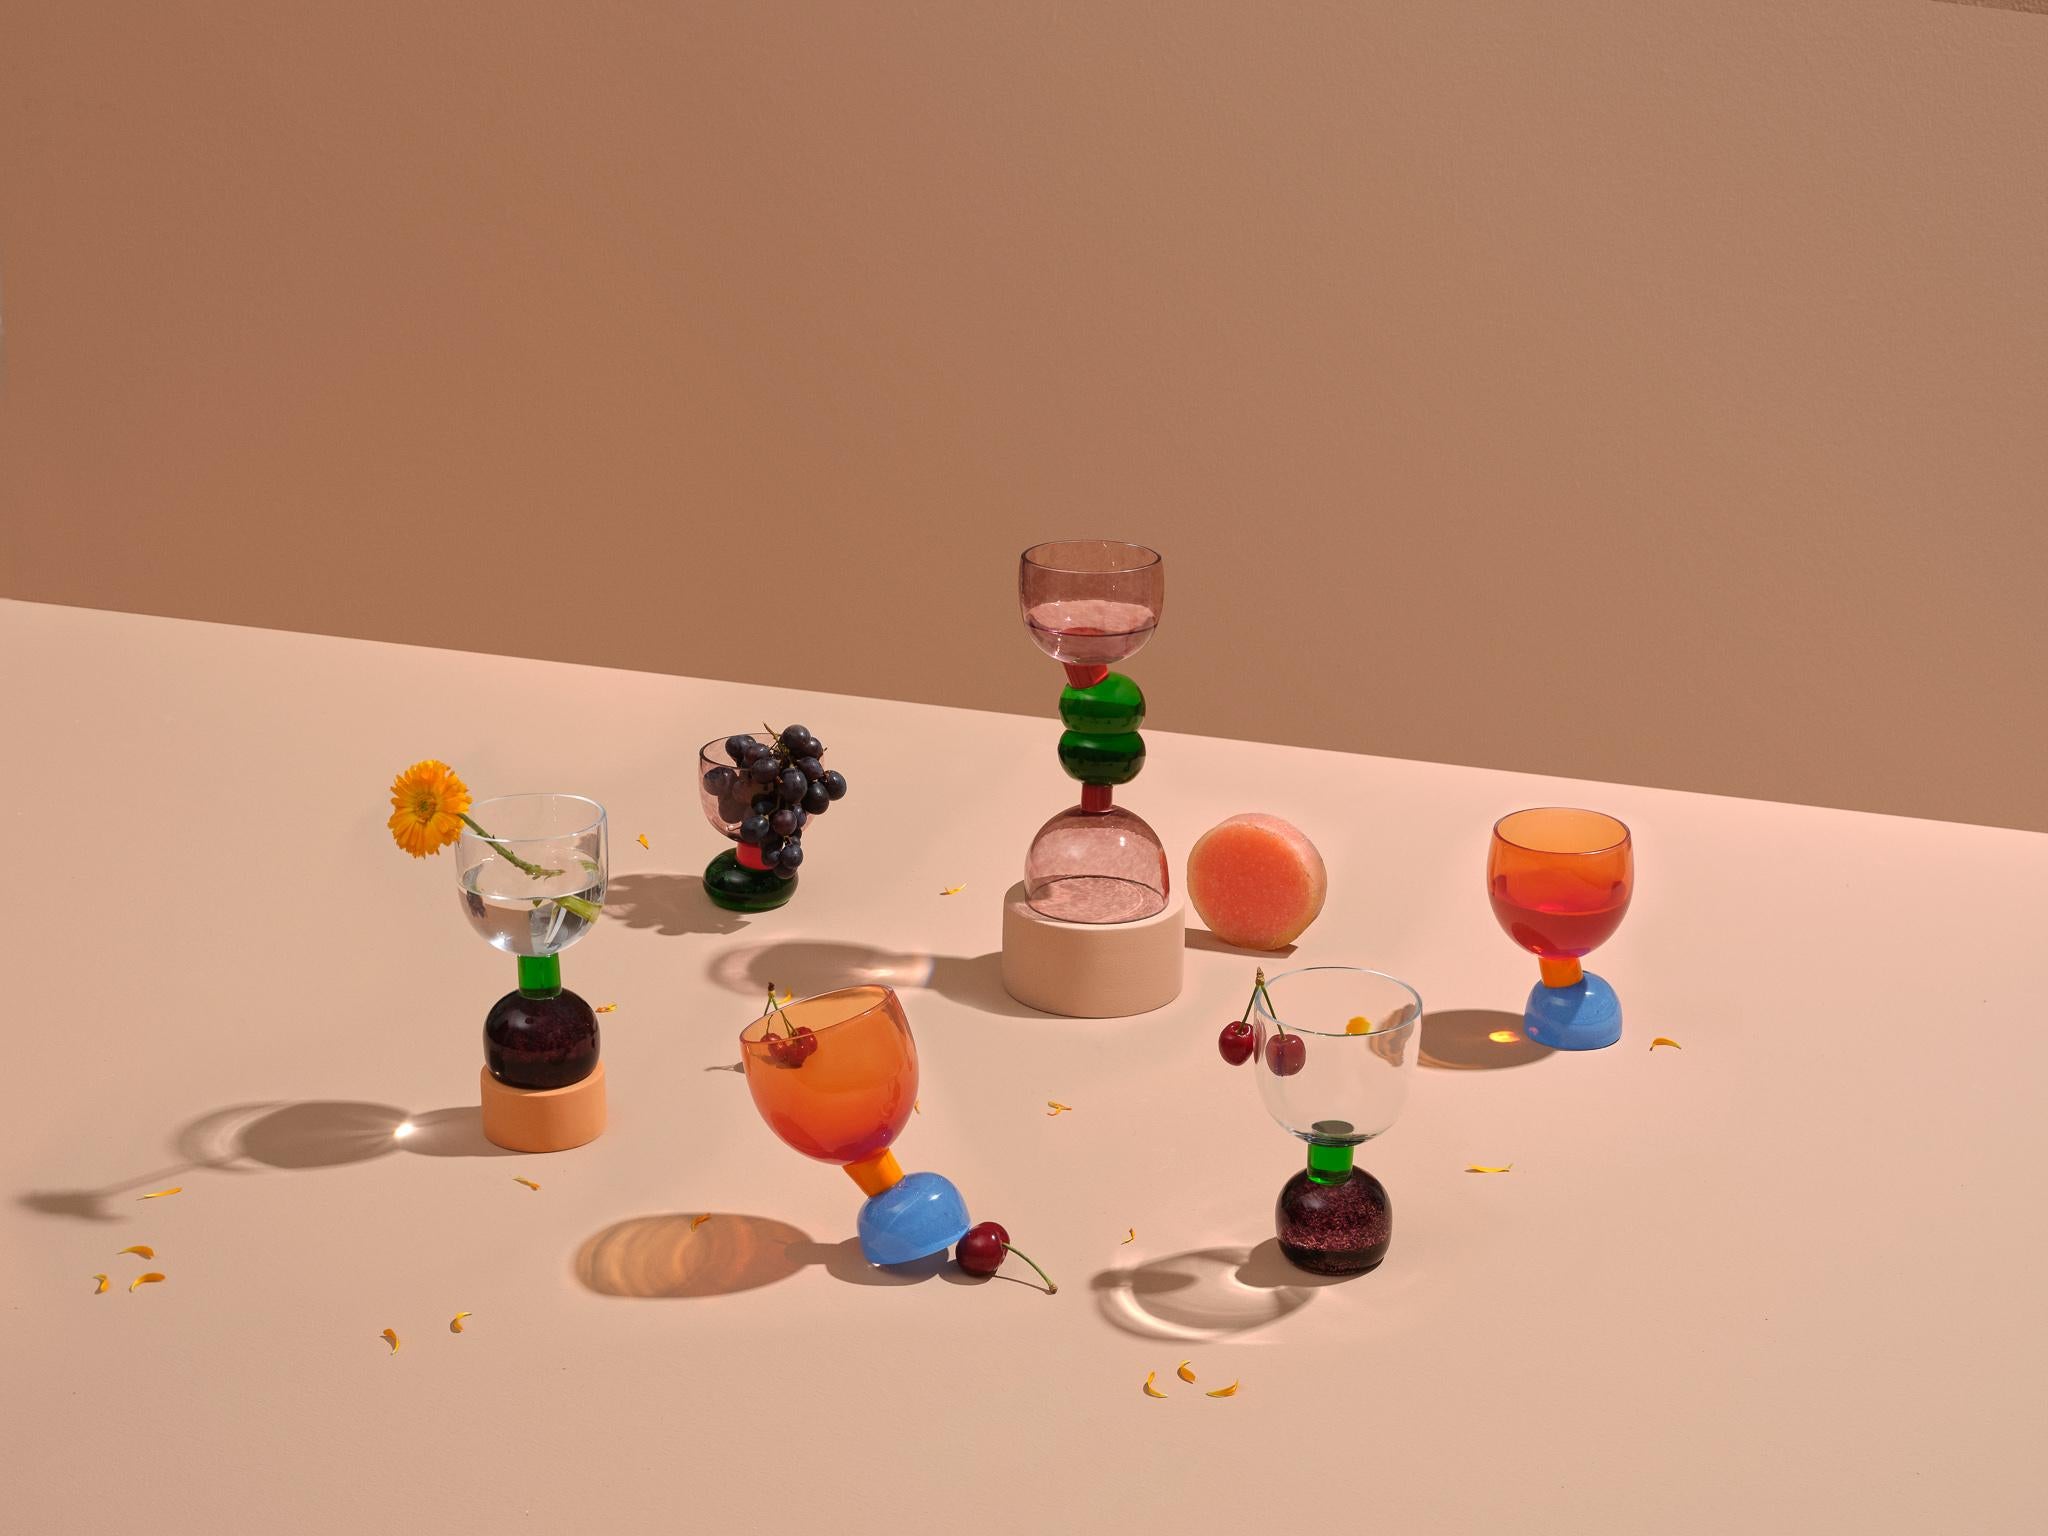 Dieses skulpturale Trinkgeschirr ist farbenfroh, naiv und wird unsere Tische schmücken und gleichzeitig funktional sein.
Die Glaswaren spiegeln das Bedürfnis der Designerin wider, sich mit farbenfrohen Materialien und Formen zu umgeben und mit